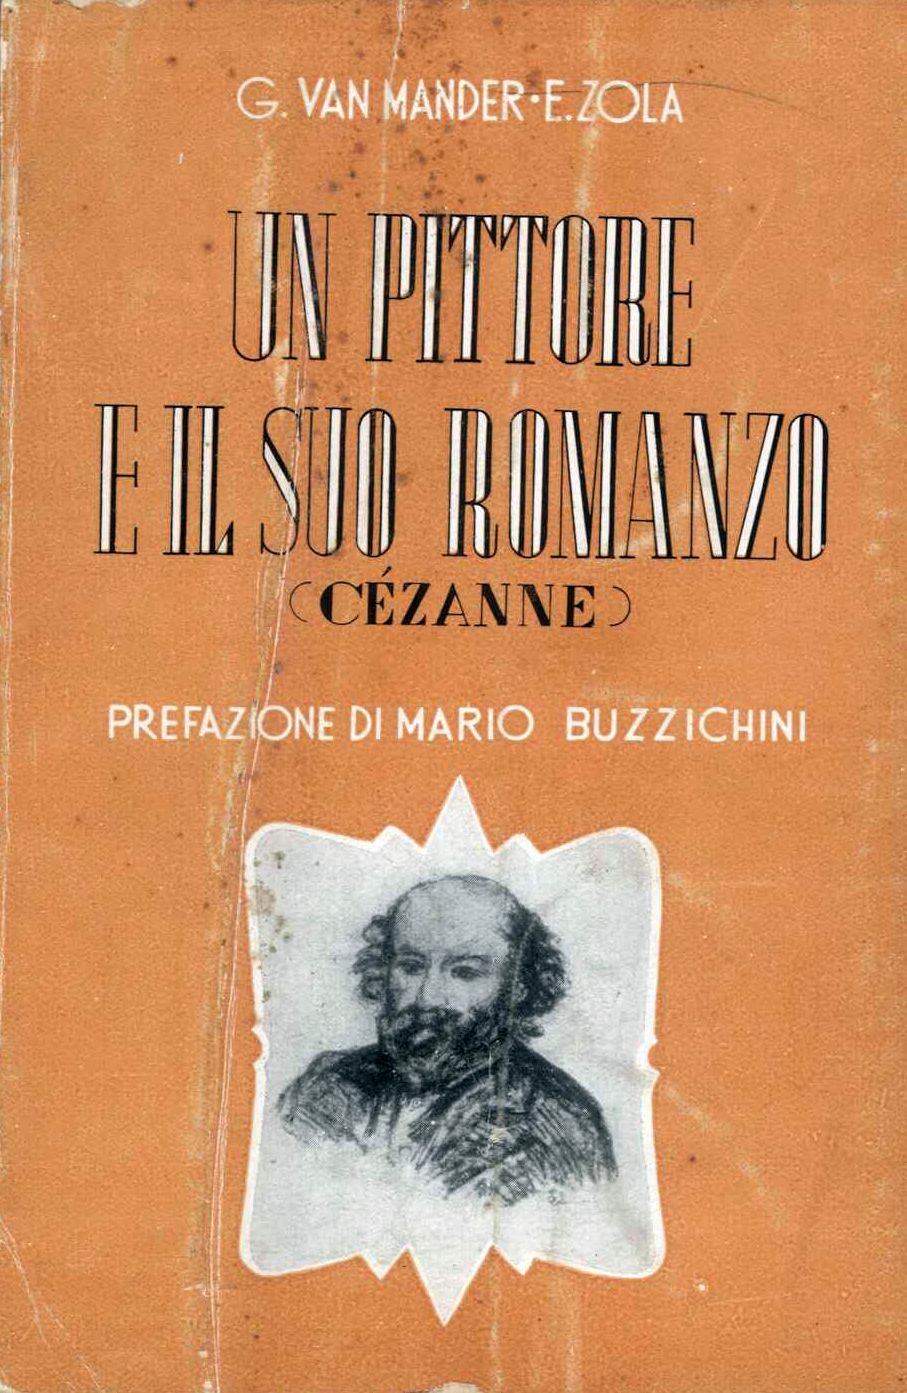 Un pittore e il suo romanzo (Cezanne)